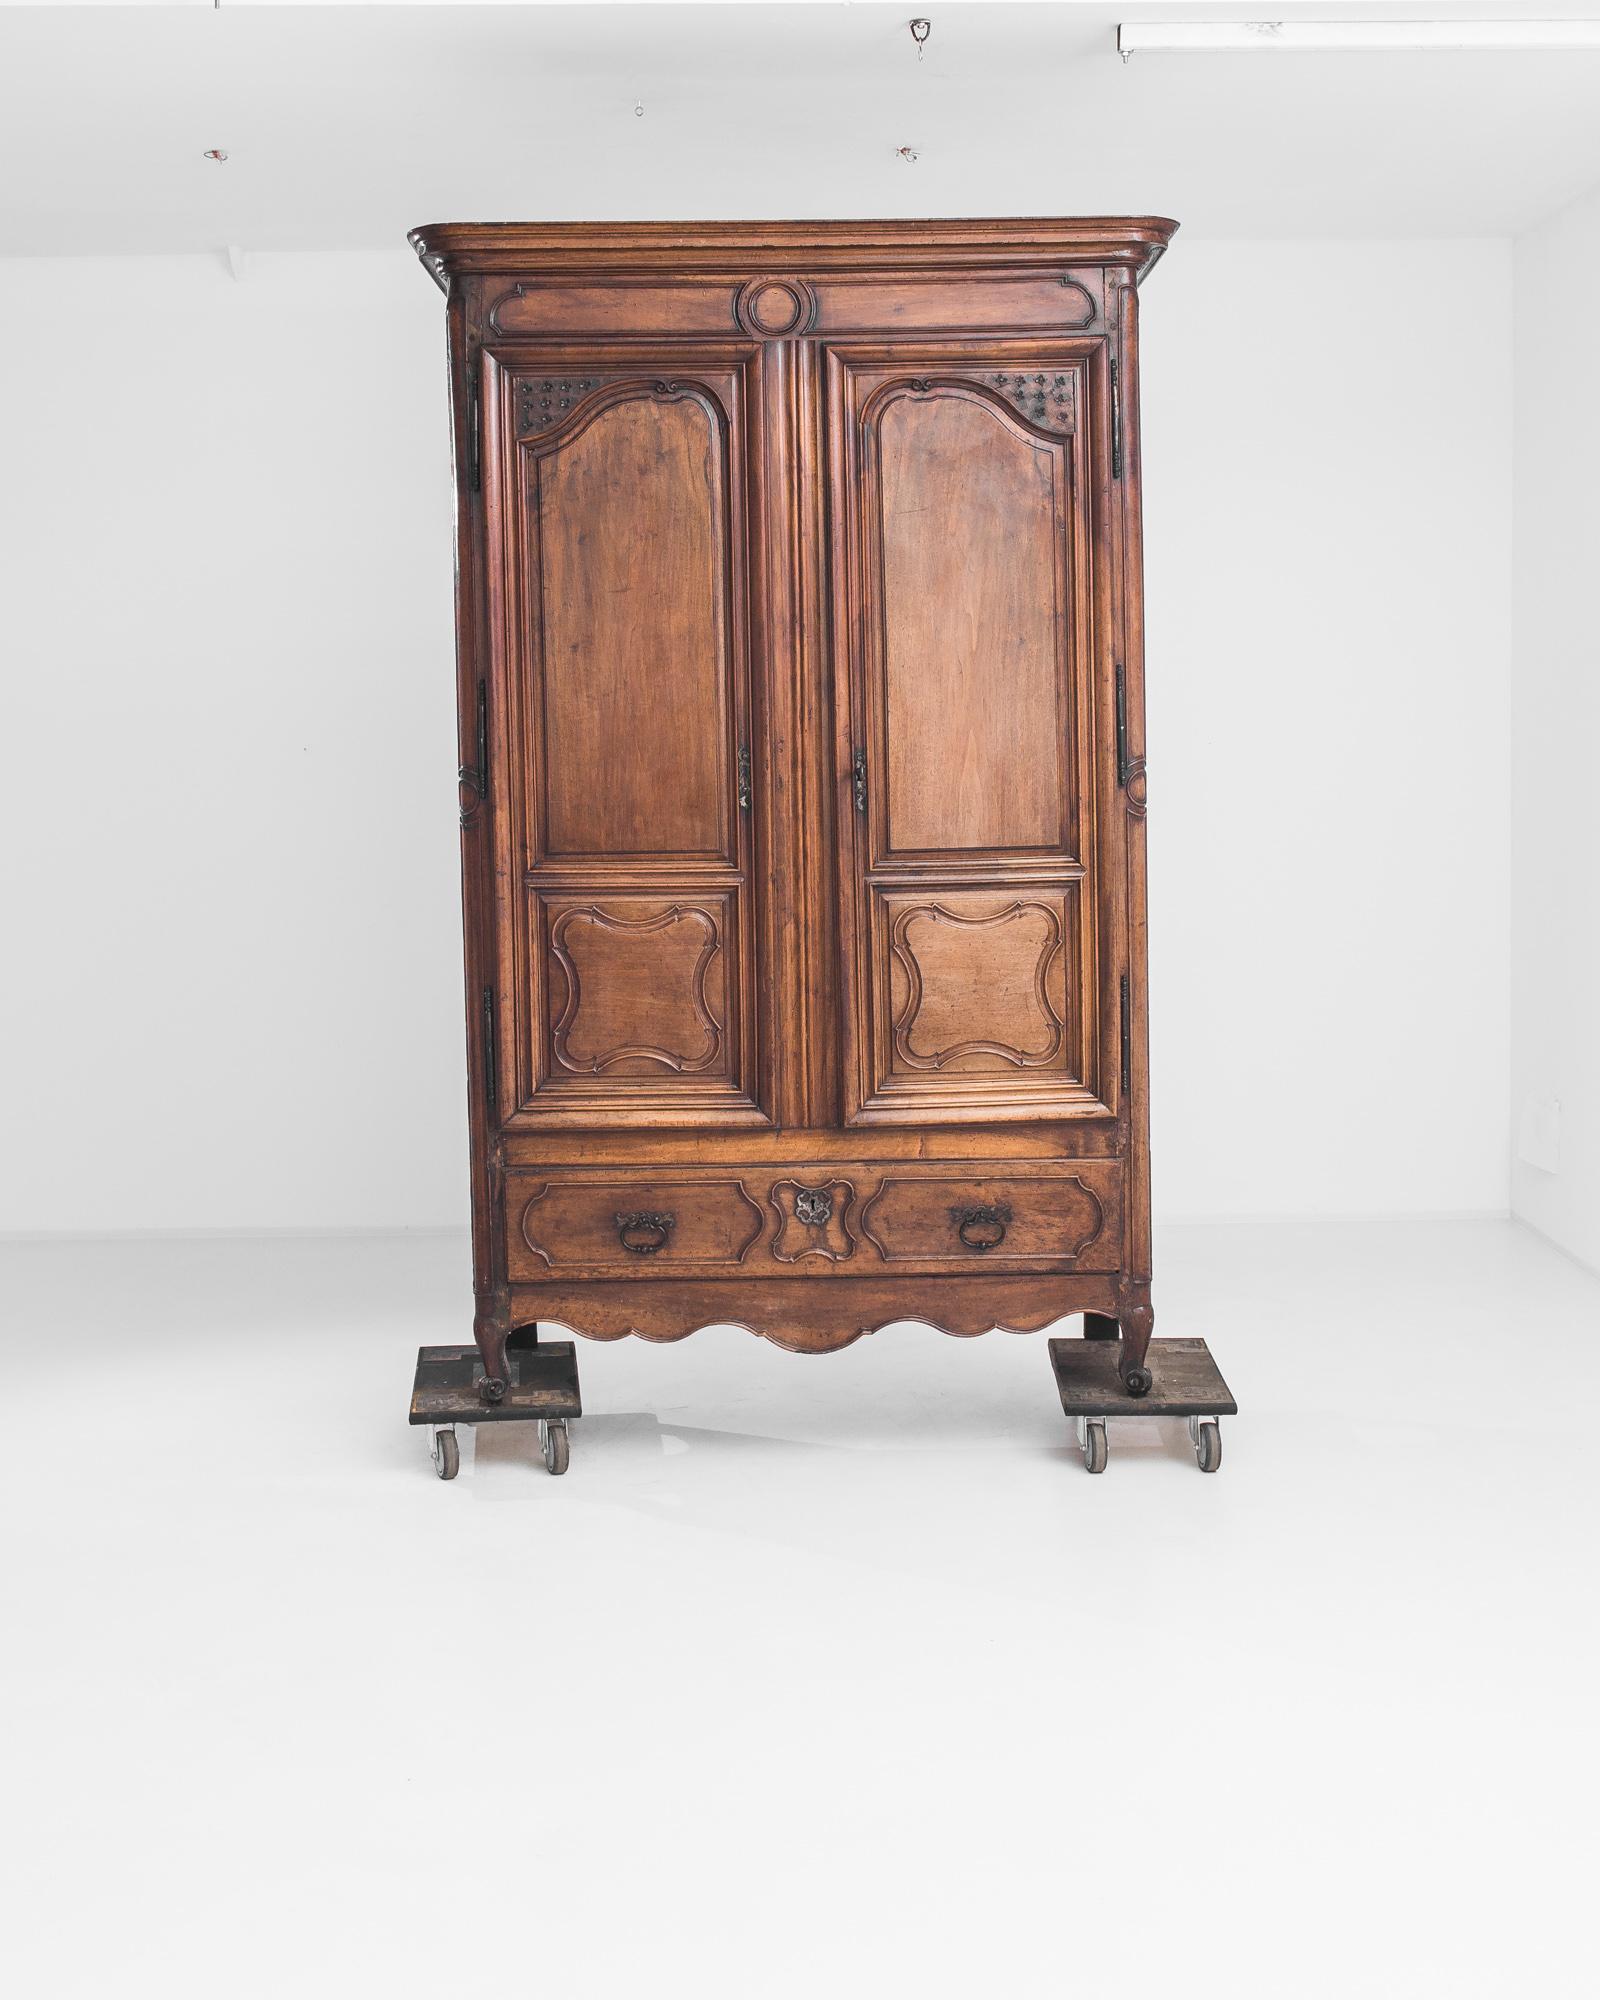 Des lignes élégantes et une multitude de détails charmants confèrent à ce meuble ancien une fraîcheur pérenne. Fabriqué en France dans les années 1780, le bois a conservé sa finition d'origine - un riche auburn, avec des nuances miellées et un poli